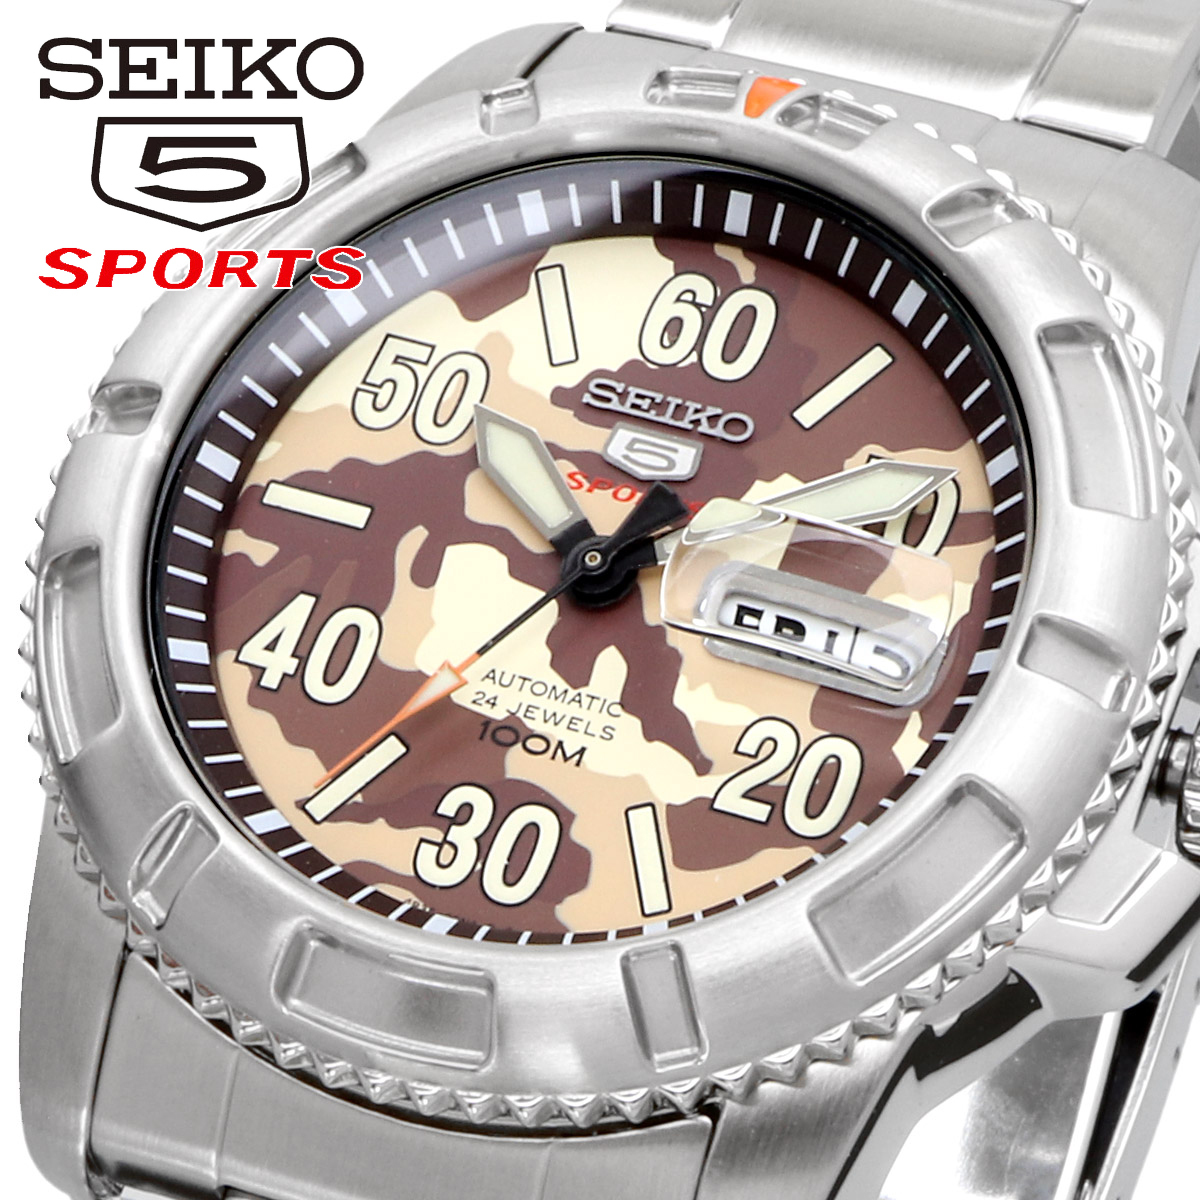 ★日本の職人技★ 腕時計 セイコー SEIKO メンズ SRP221K1 自動巻き 5スポーツ セイコーファイブ 海外モデル 海外モデル